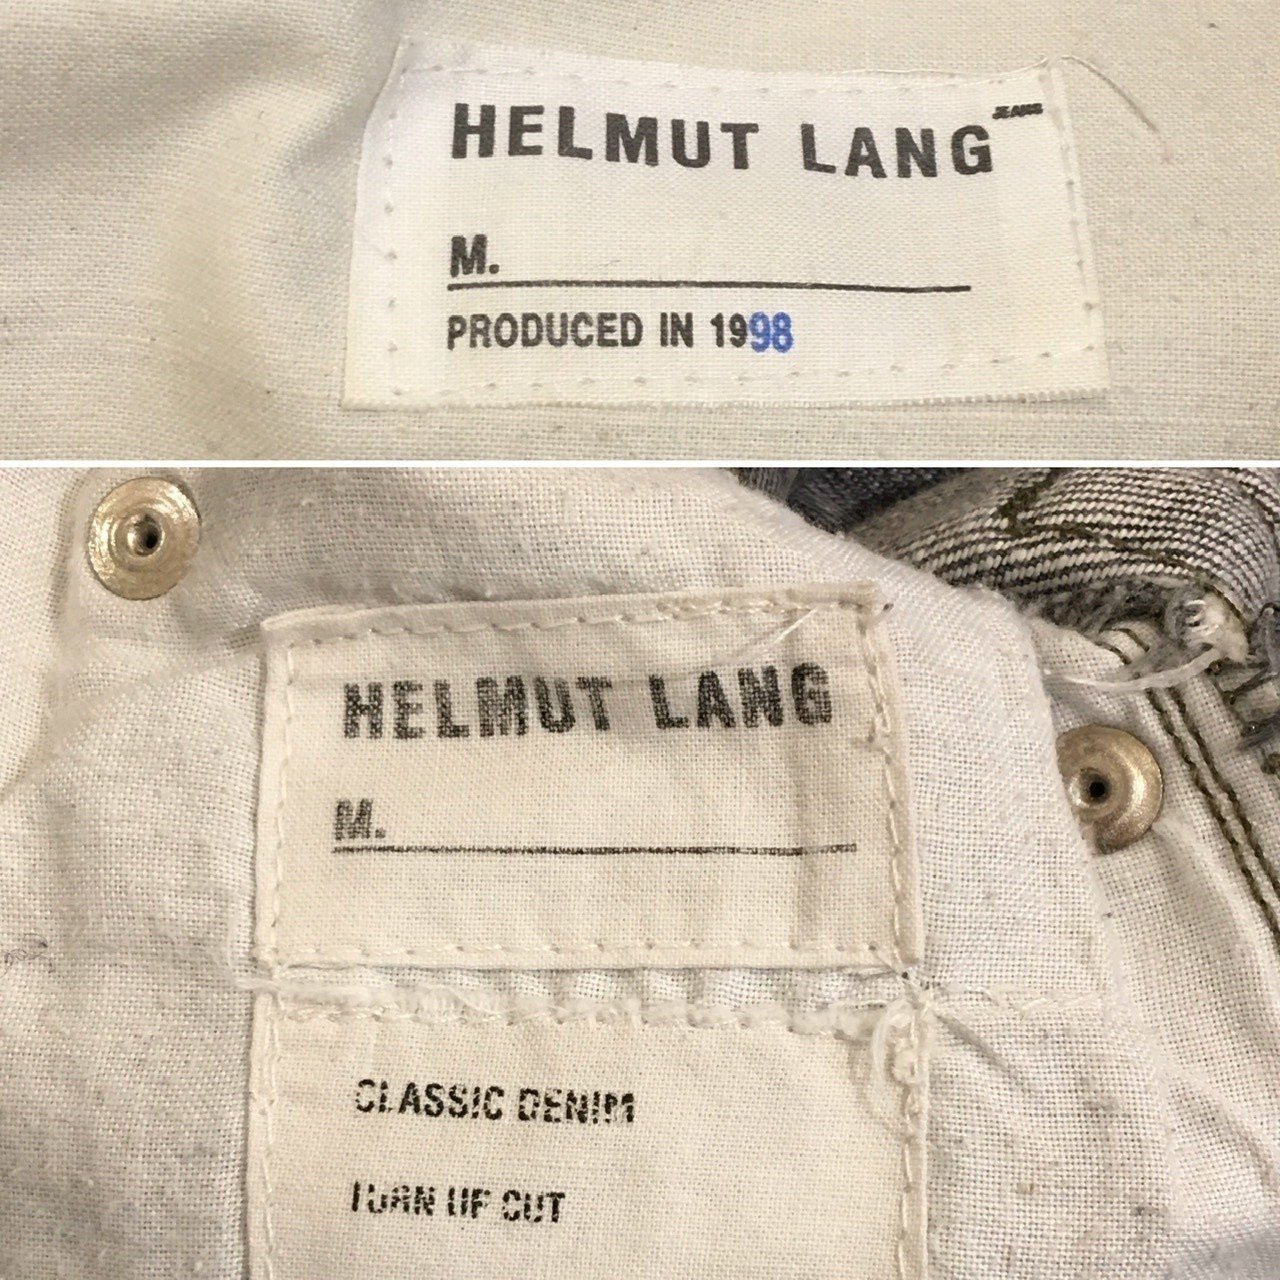 HELMUT LANG ヘルムートラング90s-mid00sジーンズのざっくり年代